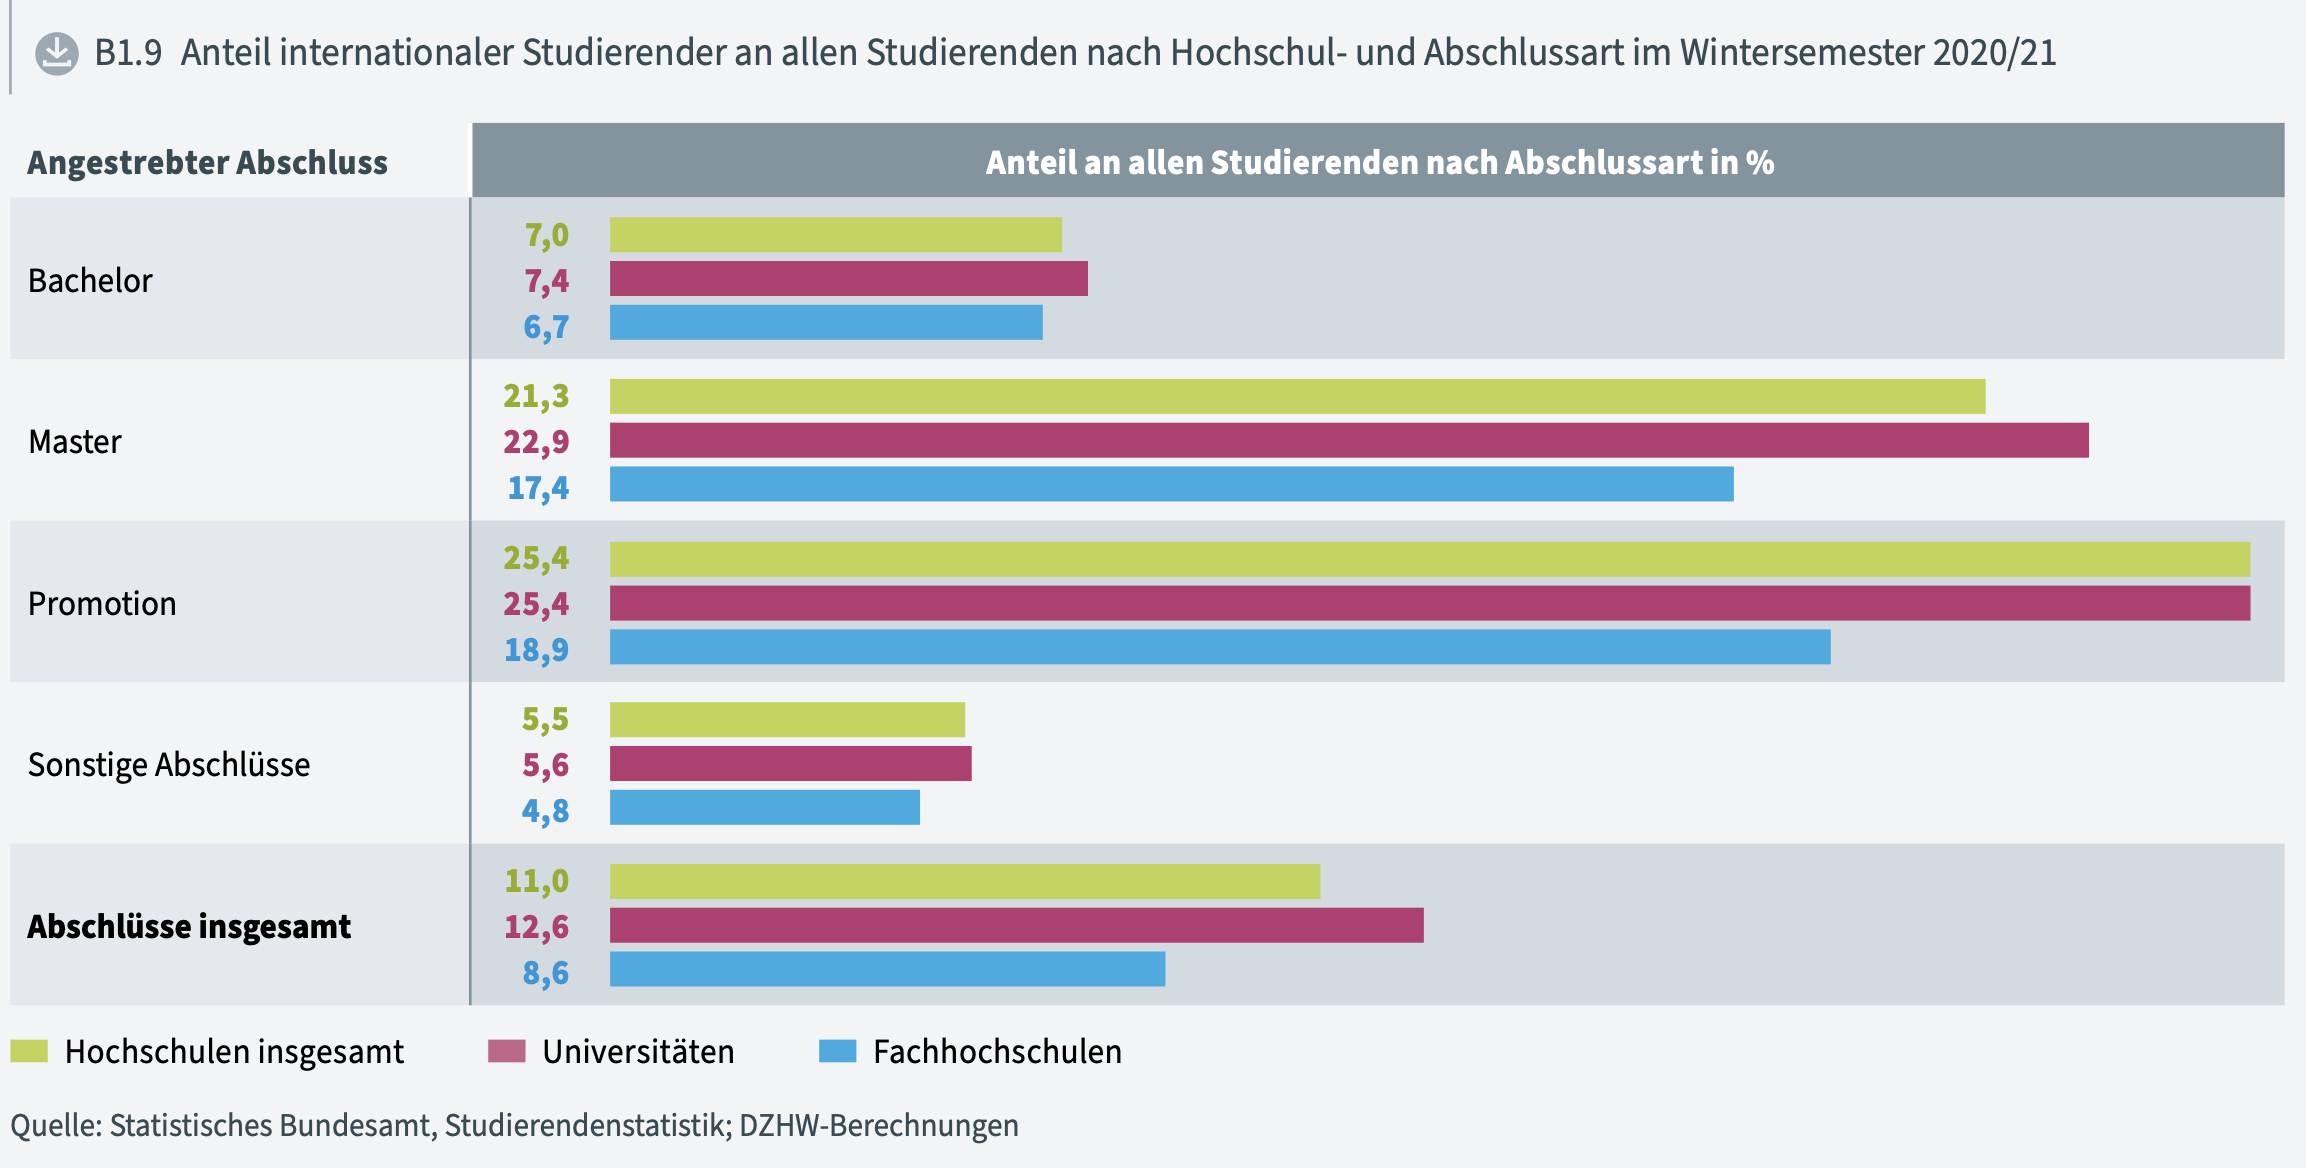 DAAD年度报告发布：新冠大流行的三年里，德国留学生发生了哪些变化？